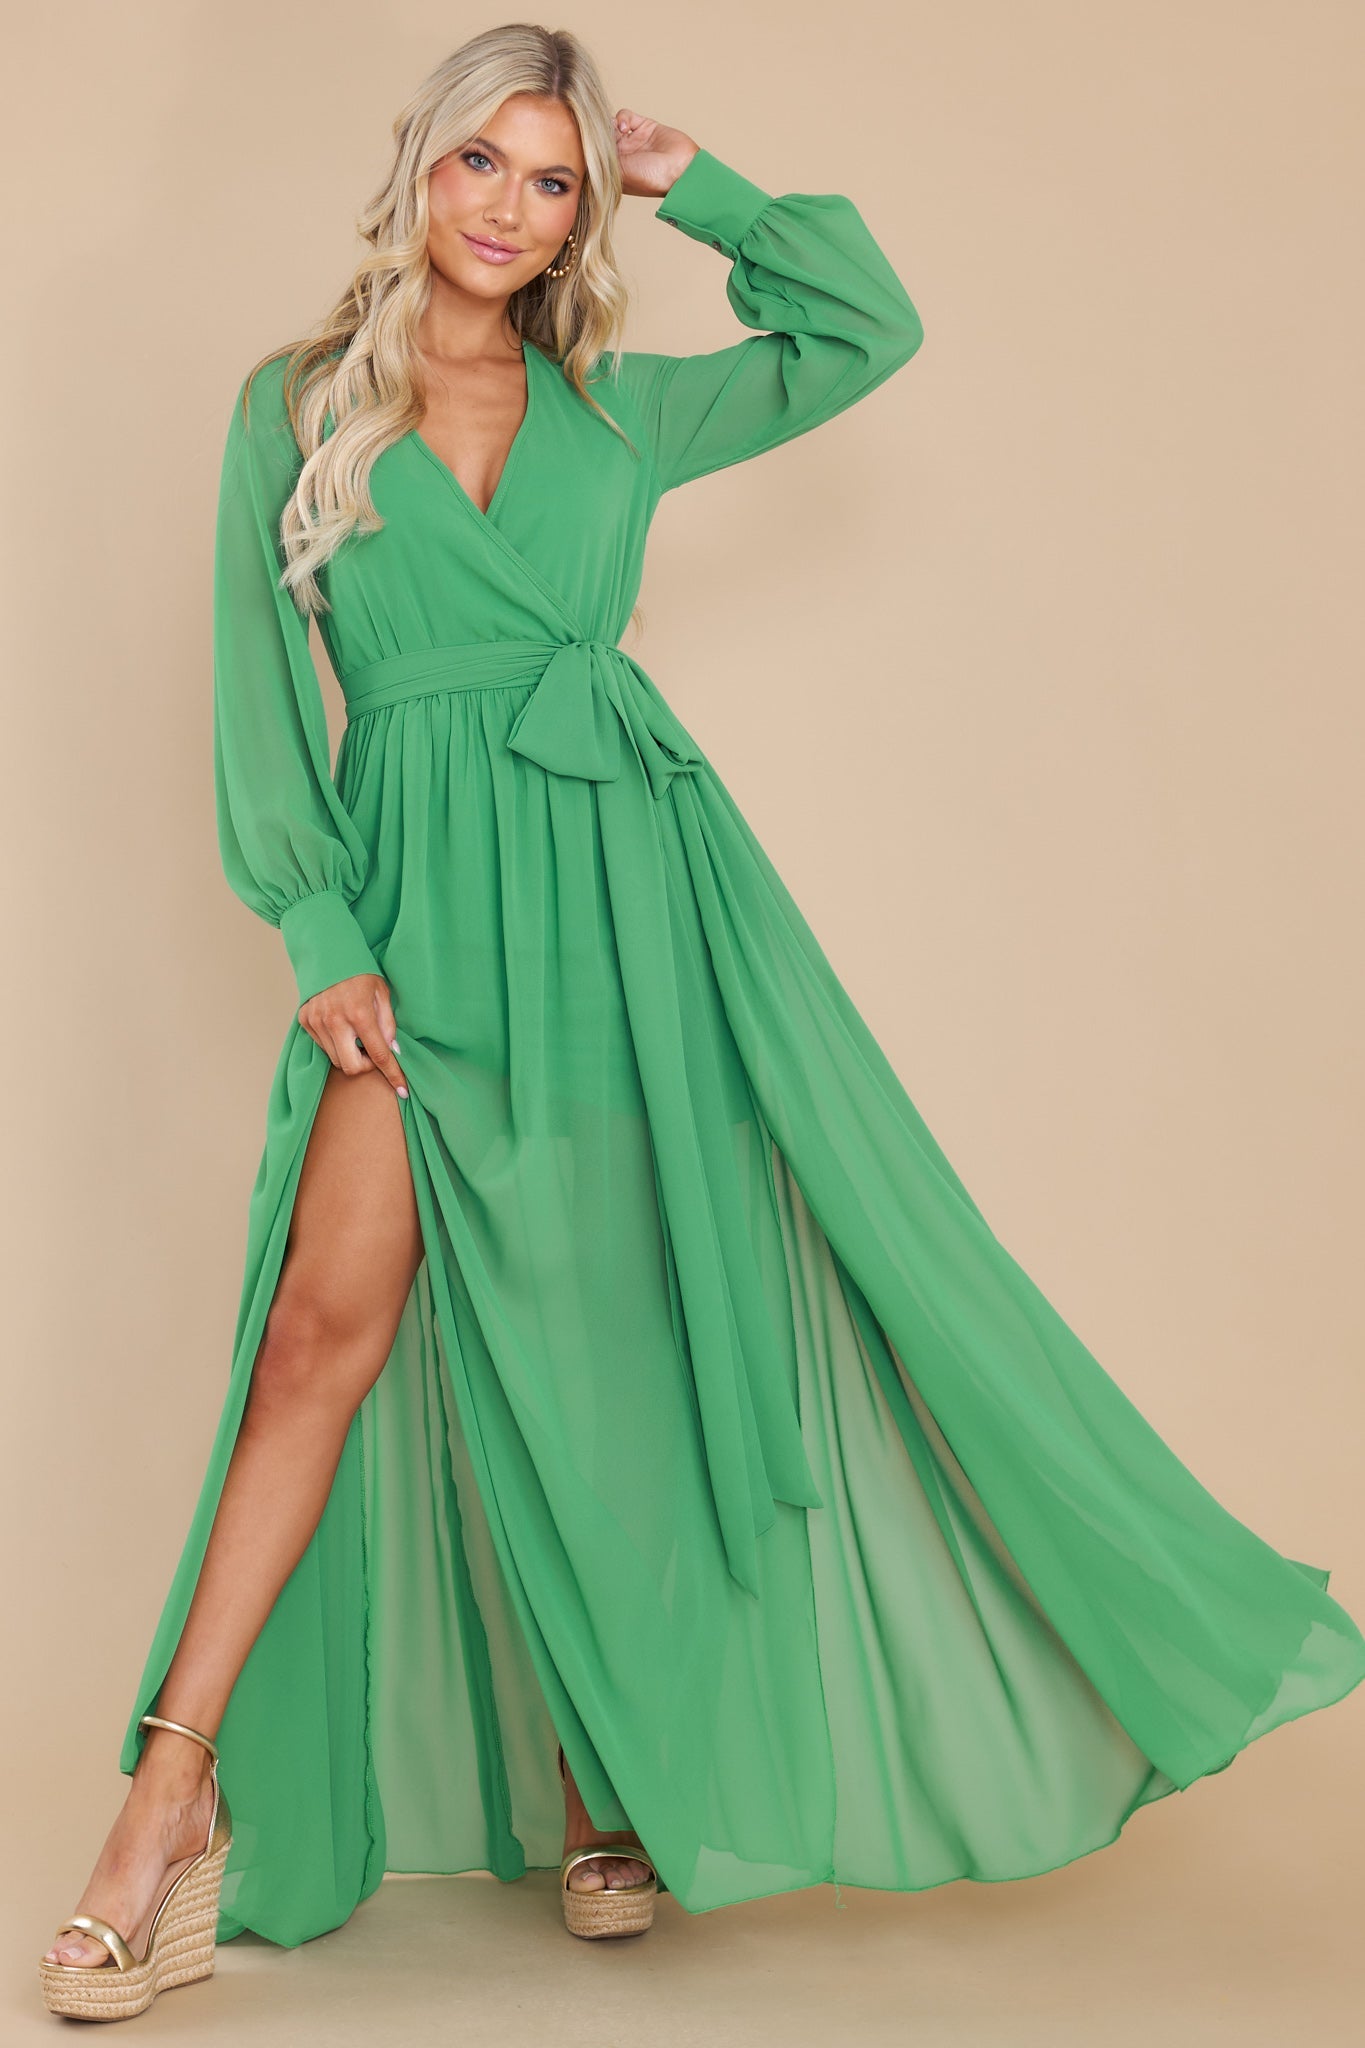 https://www.reddress.com/cdn/shop/products/hard-to-impress-green-maxi-dress-883052.jpg?v=1686084025